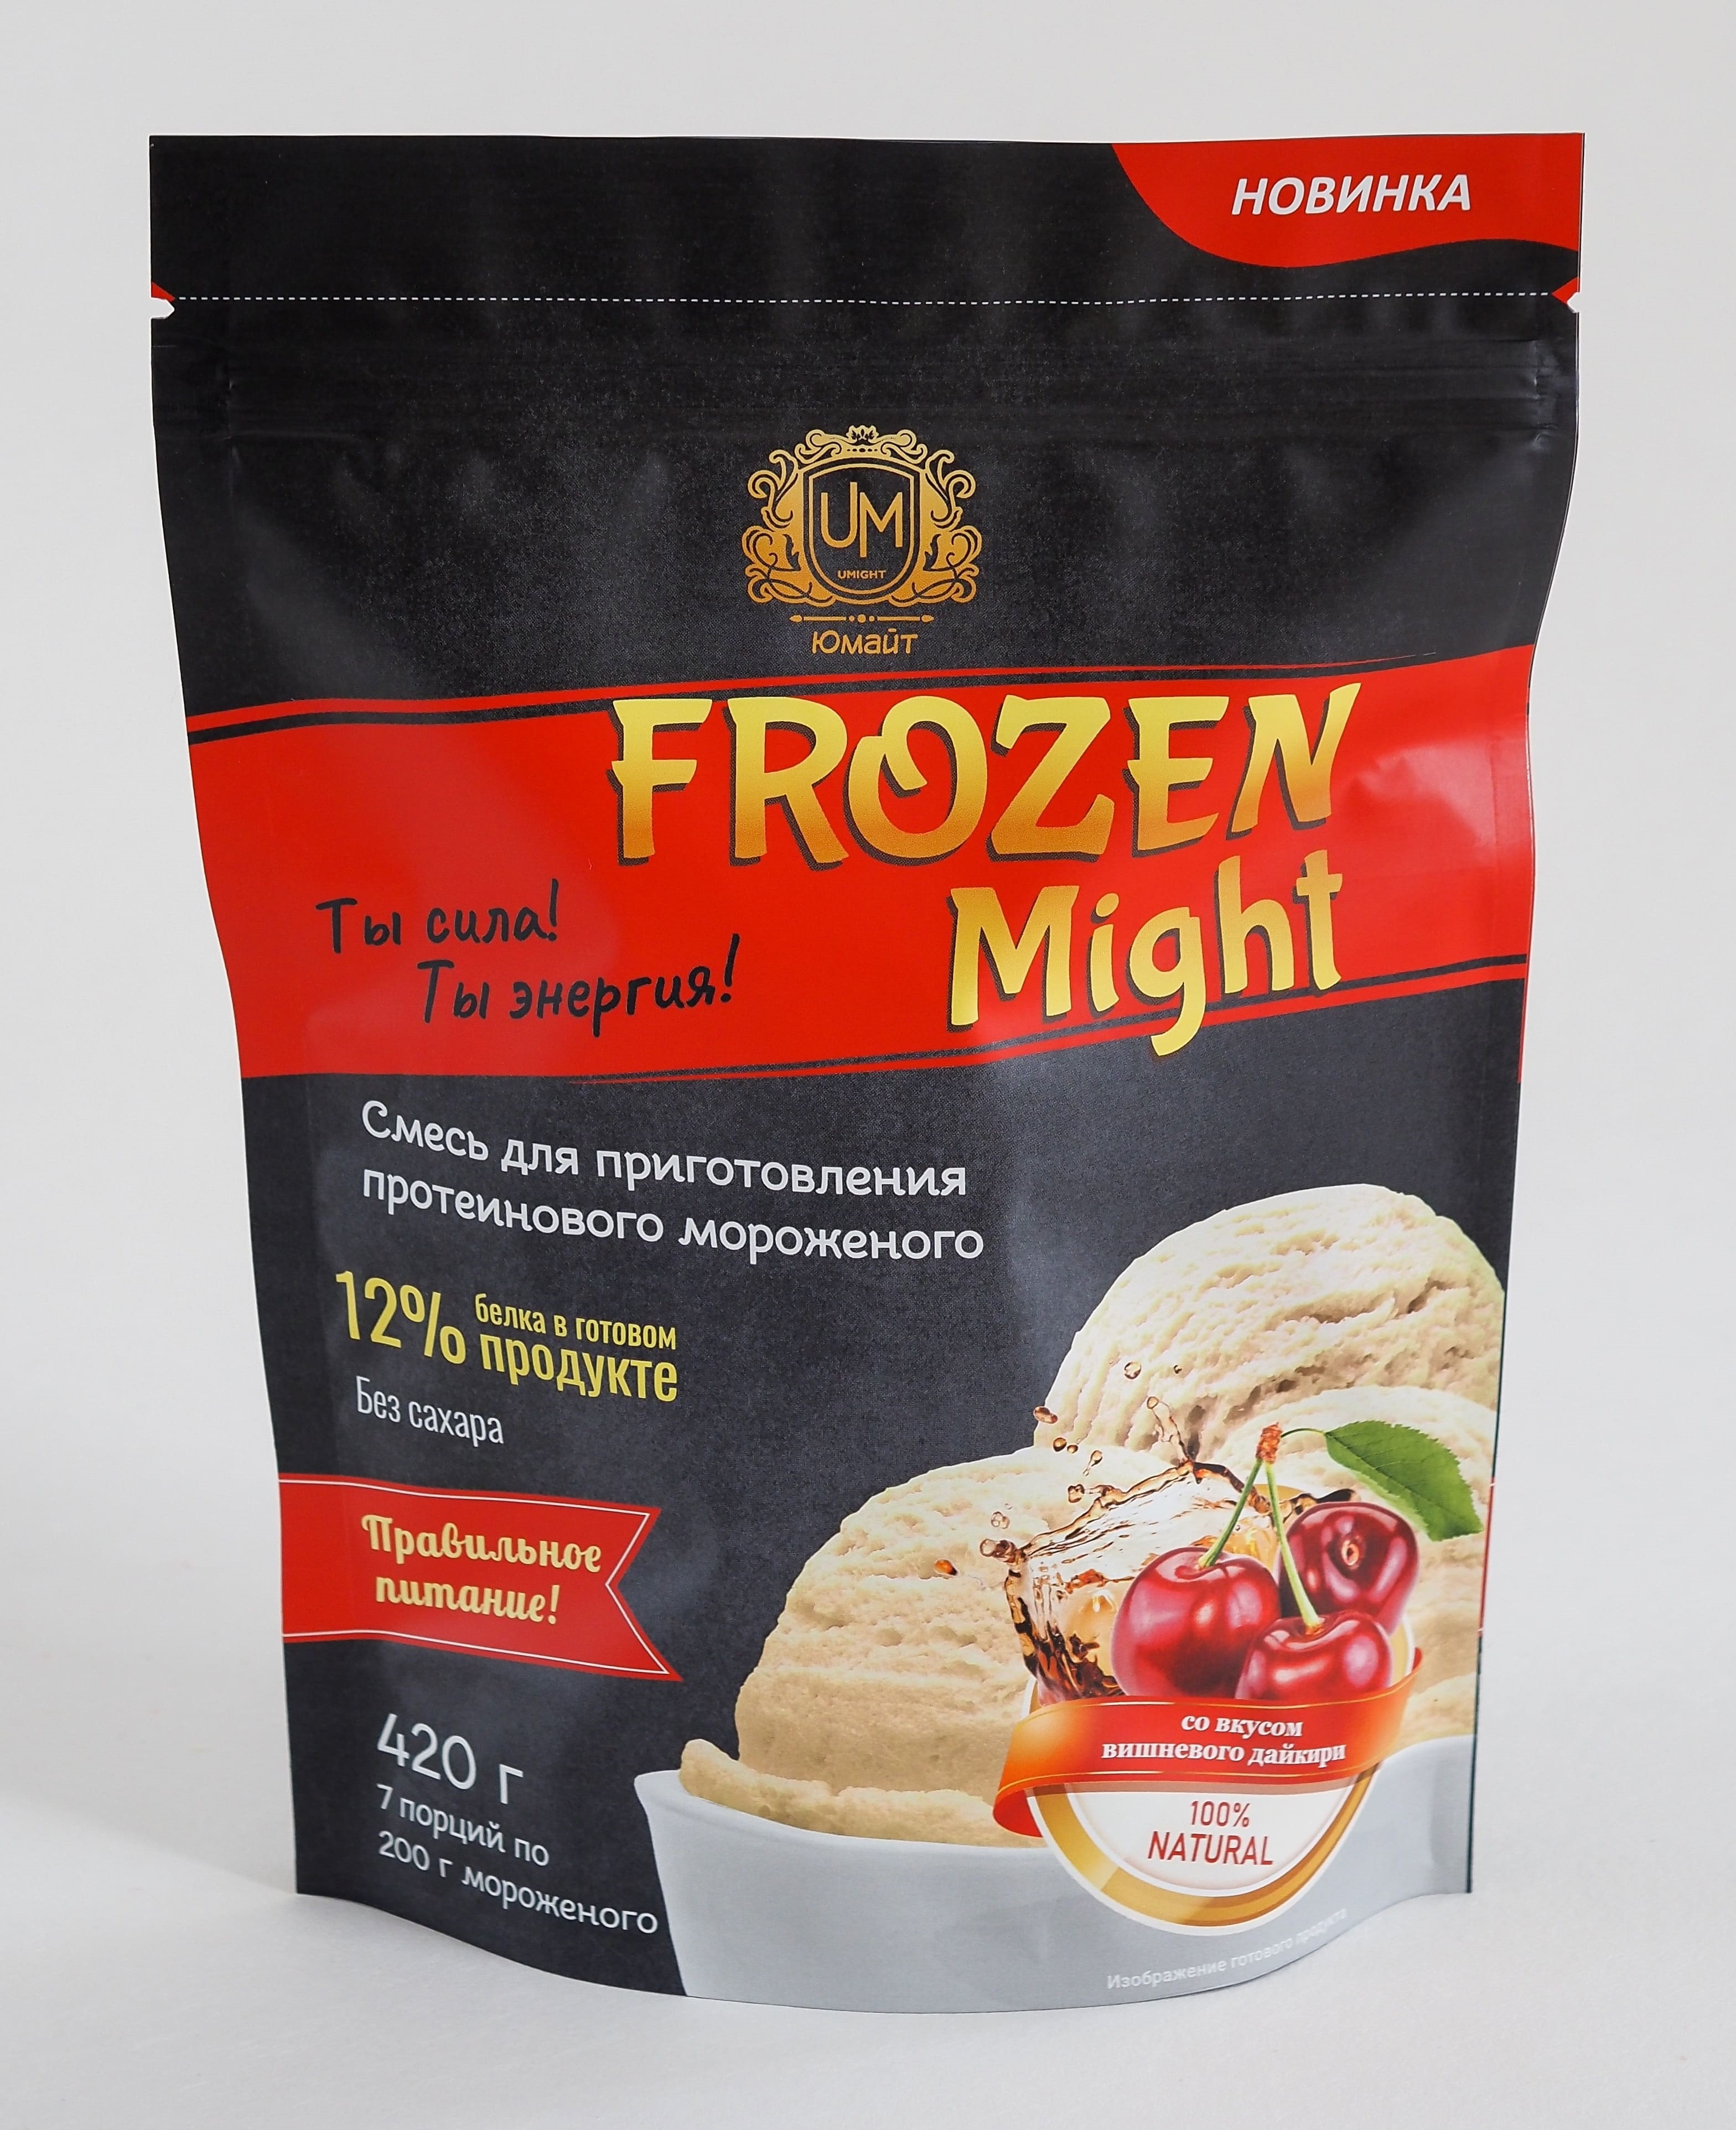 фото Протеиновое мороженое "frozen might" вишневый дайкири (сухая смесь), 420г, юмайт fm012 ооо "юмайт"